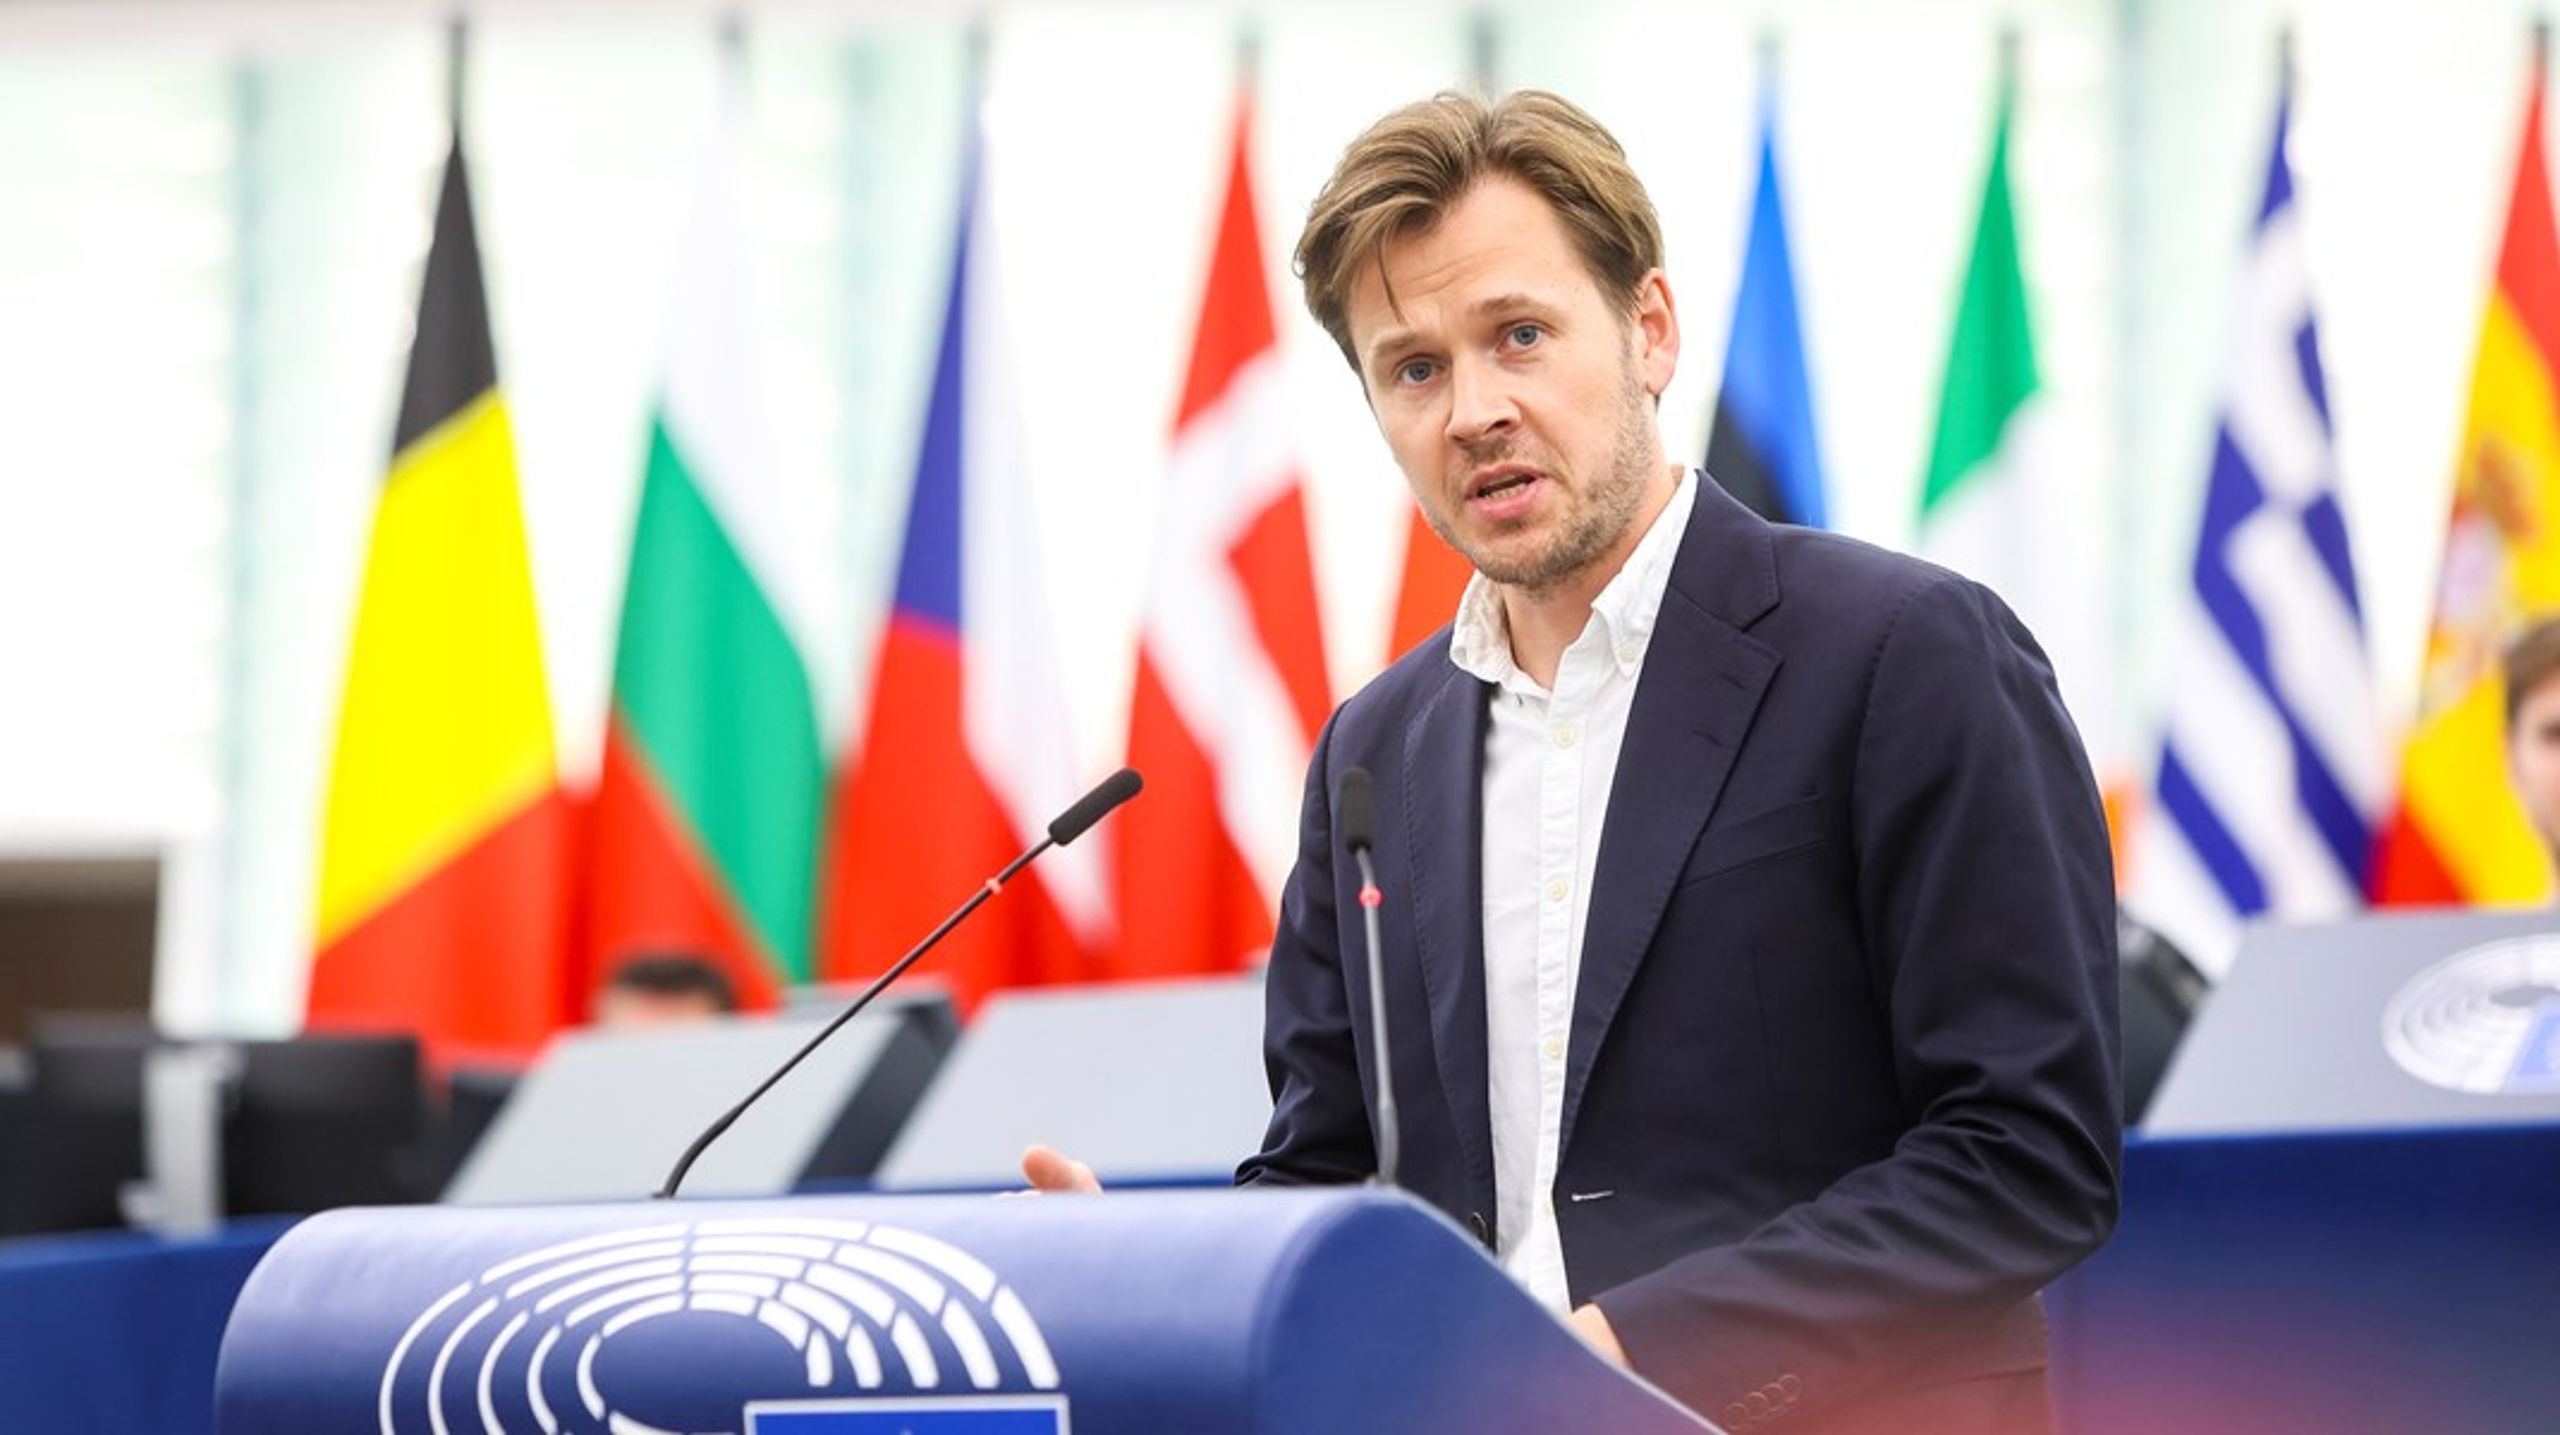 Den danske EU-parlamentarikeren for Socialdemokratiet, Niels Fuglsang, mener at EU bør revurdere forholdet til Kina, som vi er blitt for avhengige av.